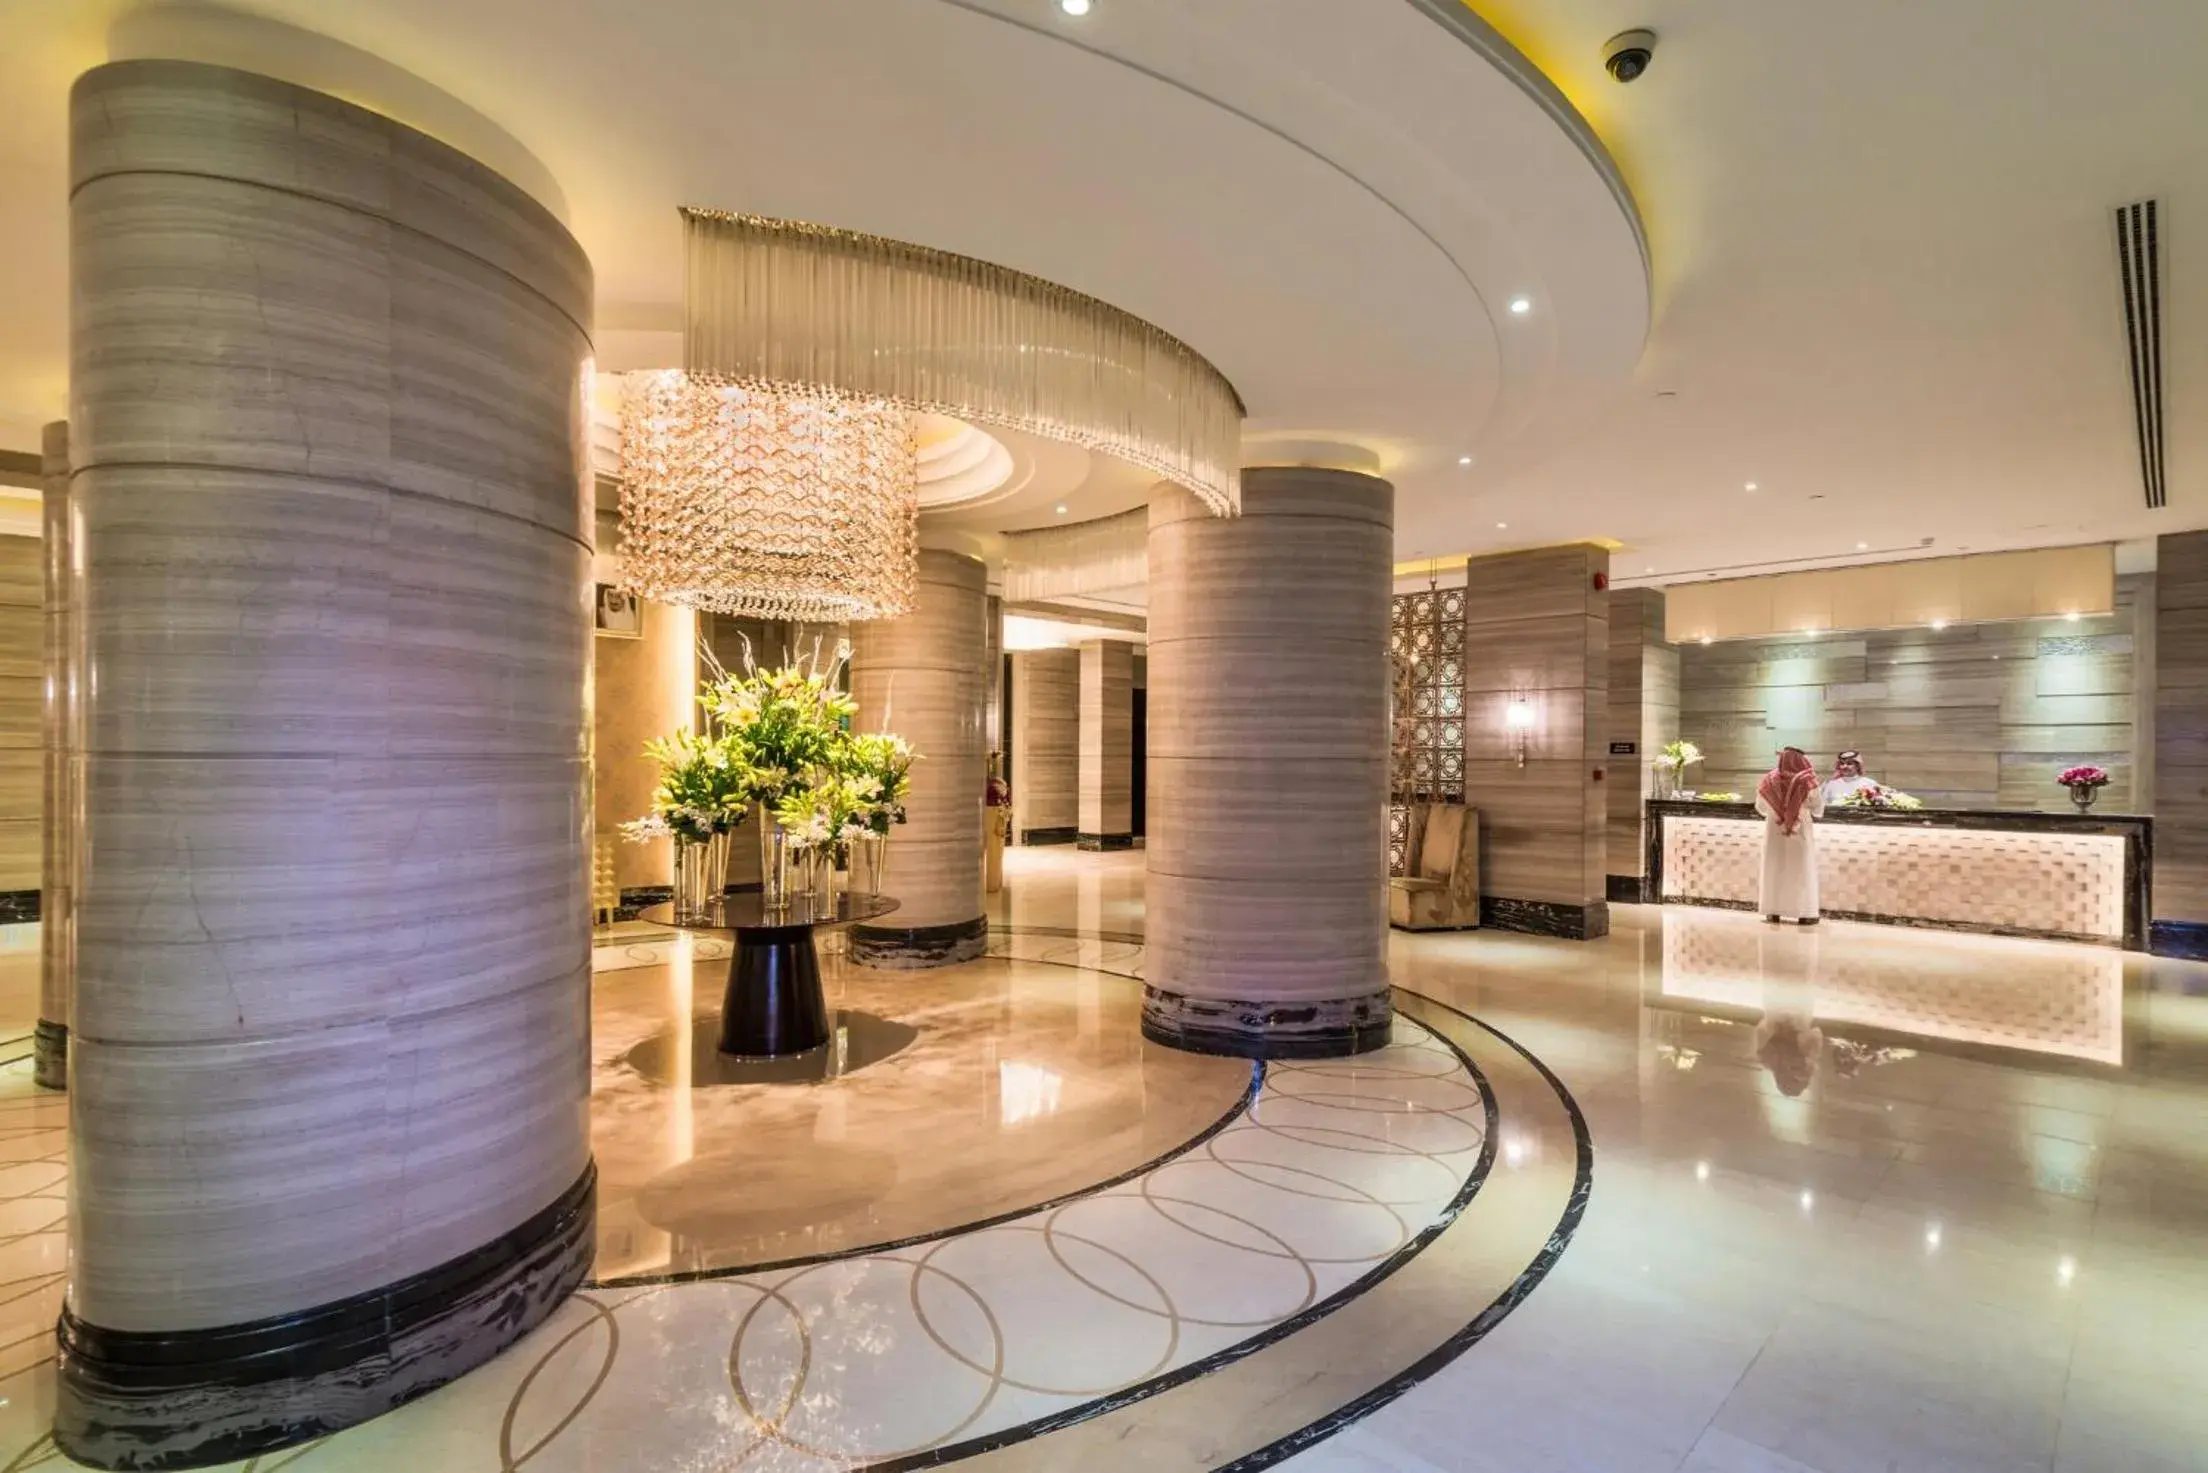 Lobby or reception, Lobby/Reception in Boudl Al Qasr